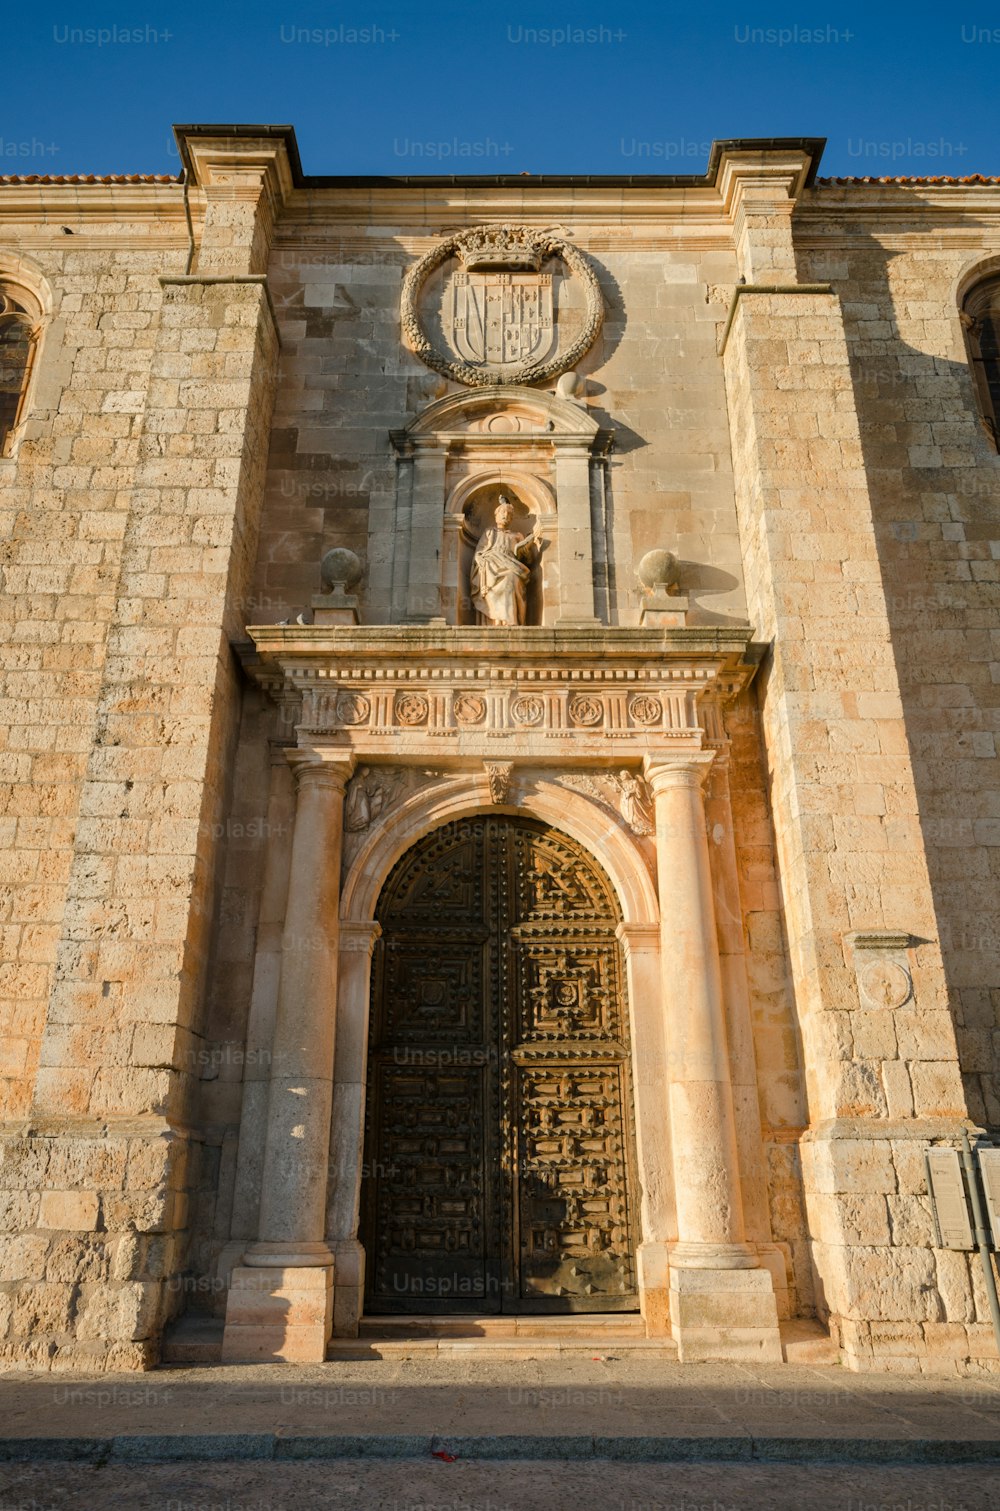 스페인 부르고스 레르마에 있는 산 페드로 교회의 정면과 문 디테일.